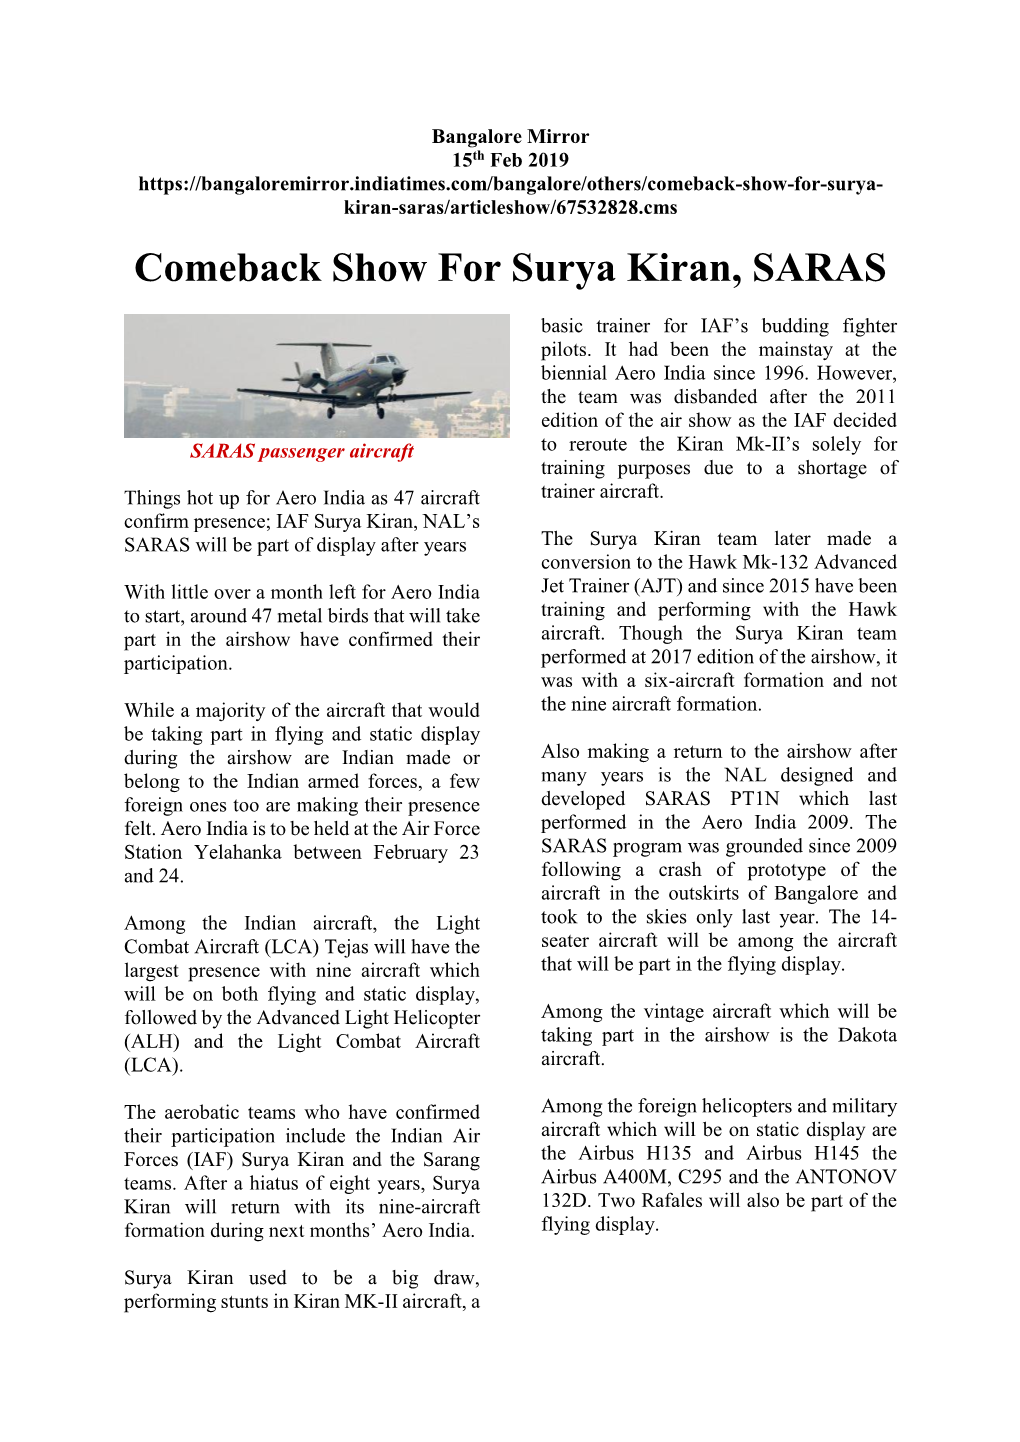 Comeback Show for Surya Kiran, SARAS